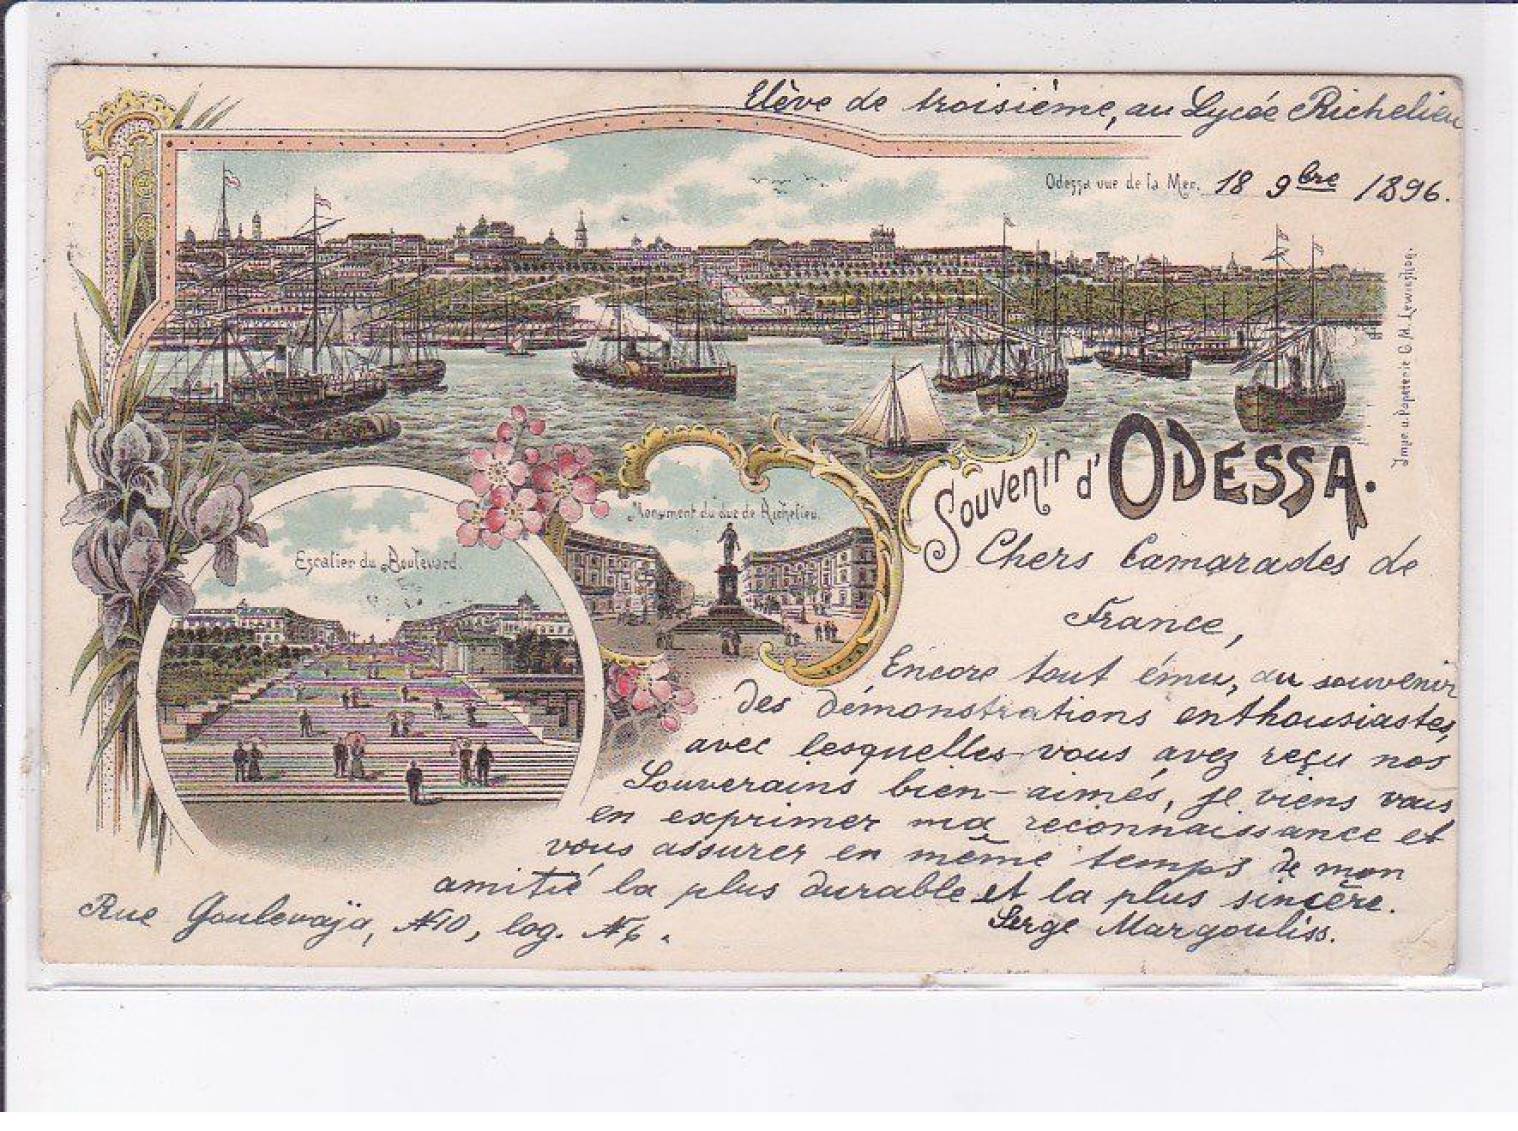 UKRAINE: ODESSA: souvenir of Odessa, 1896 - condition